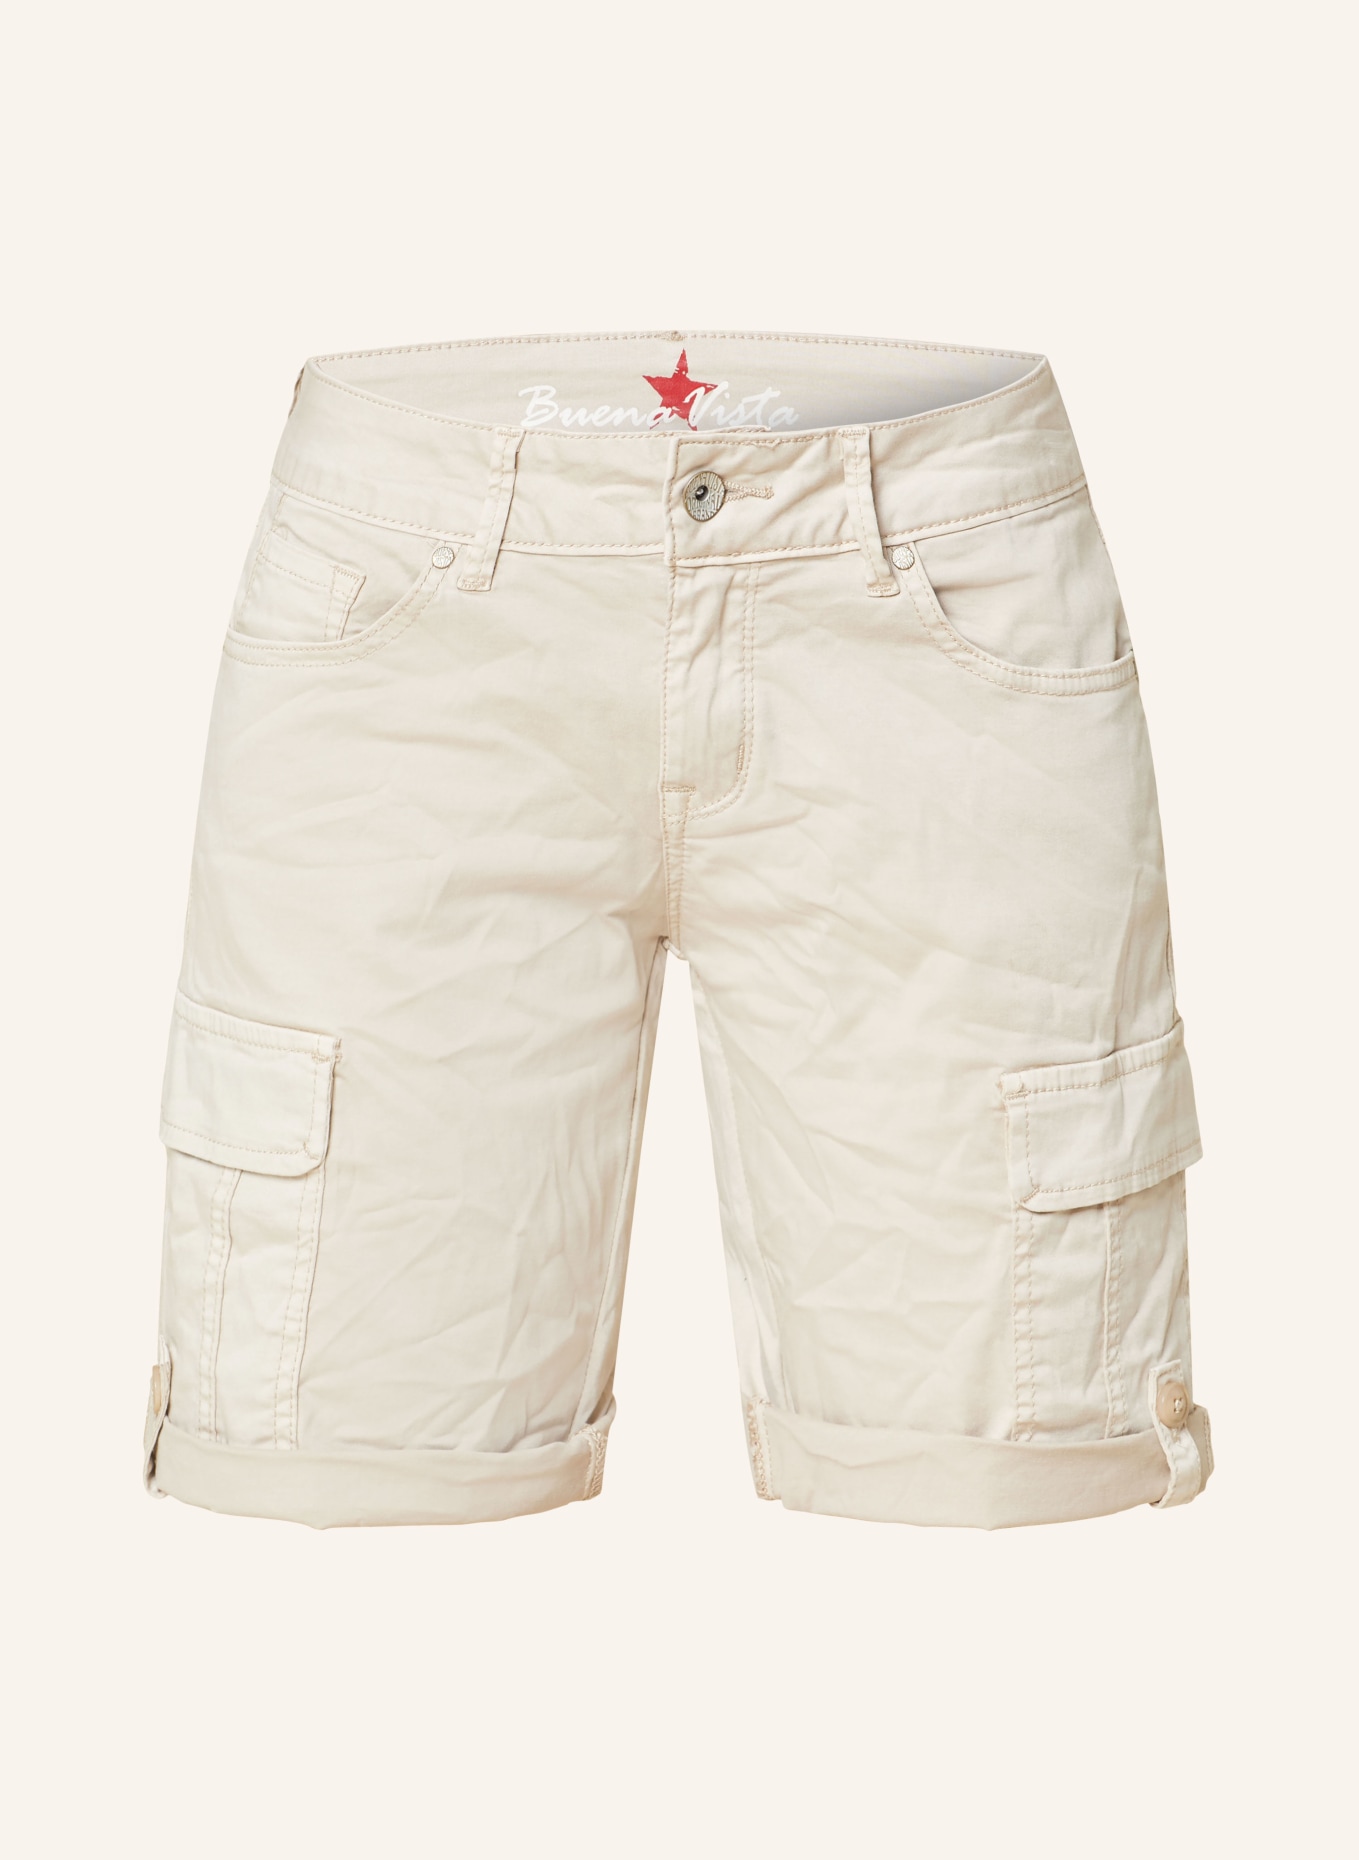 Buena Vista Cargo shorts, Color: CREAM (Image 1)